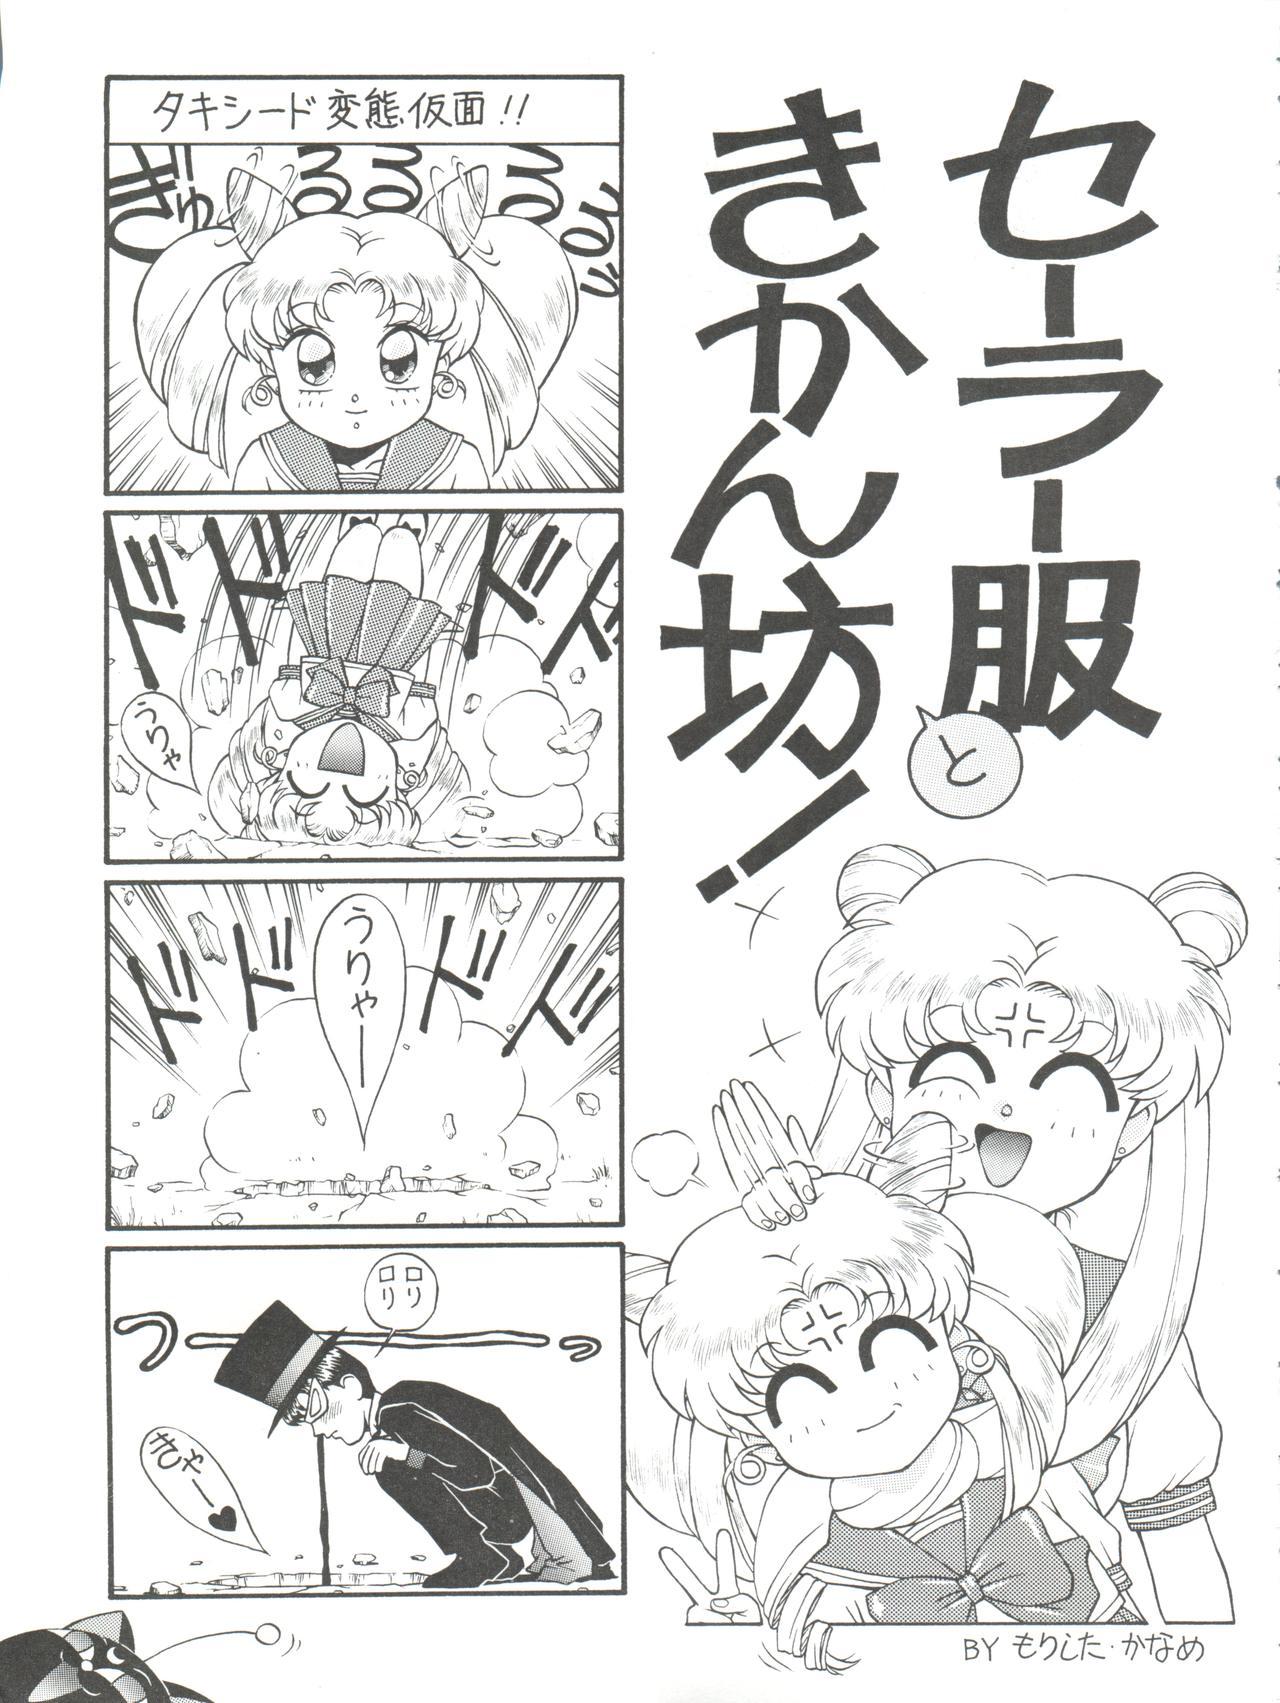 Groupfuck NANIWA-YA FINAL DRESS UP! - Sailor moon Slayers Hime chans ribbon Ng knight lamune and 40 Brave express might gaine Stockings - Page 11